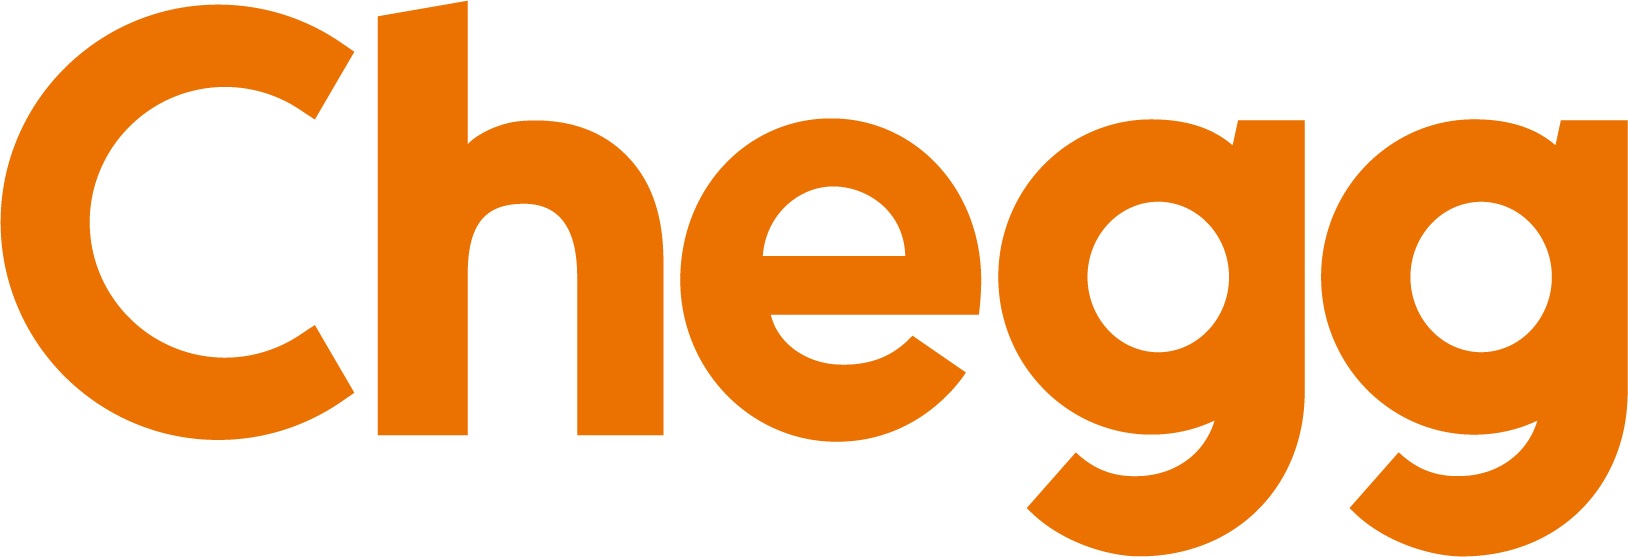 Chegg new logo 2021.jpg